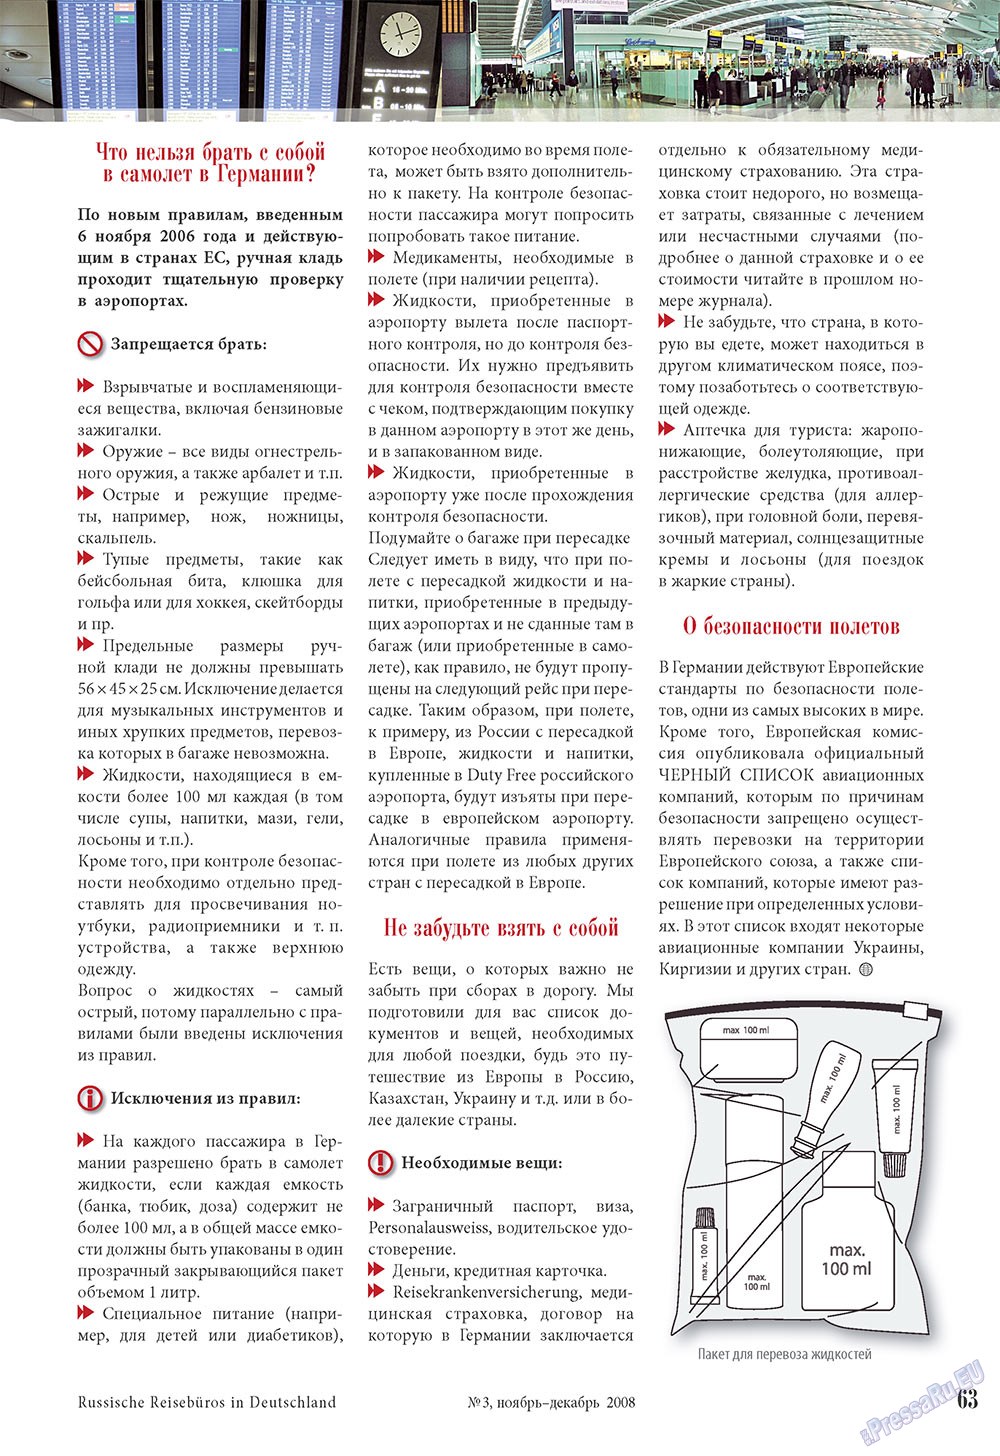 Наше Турбюро, журнал. 2008 №3 стр.63